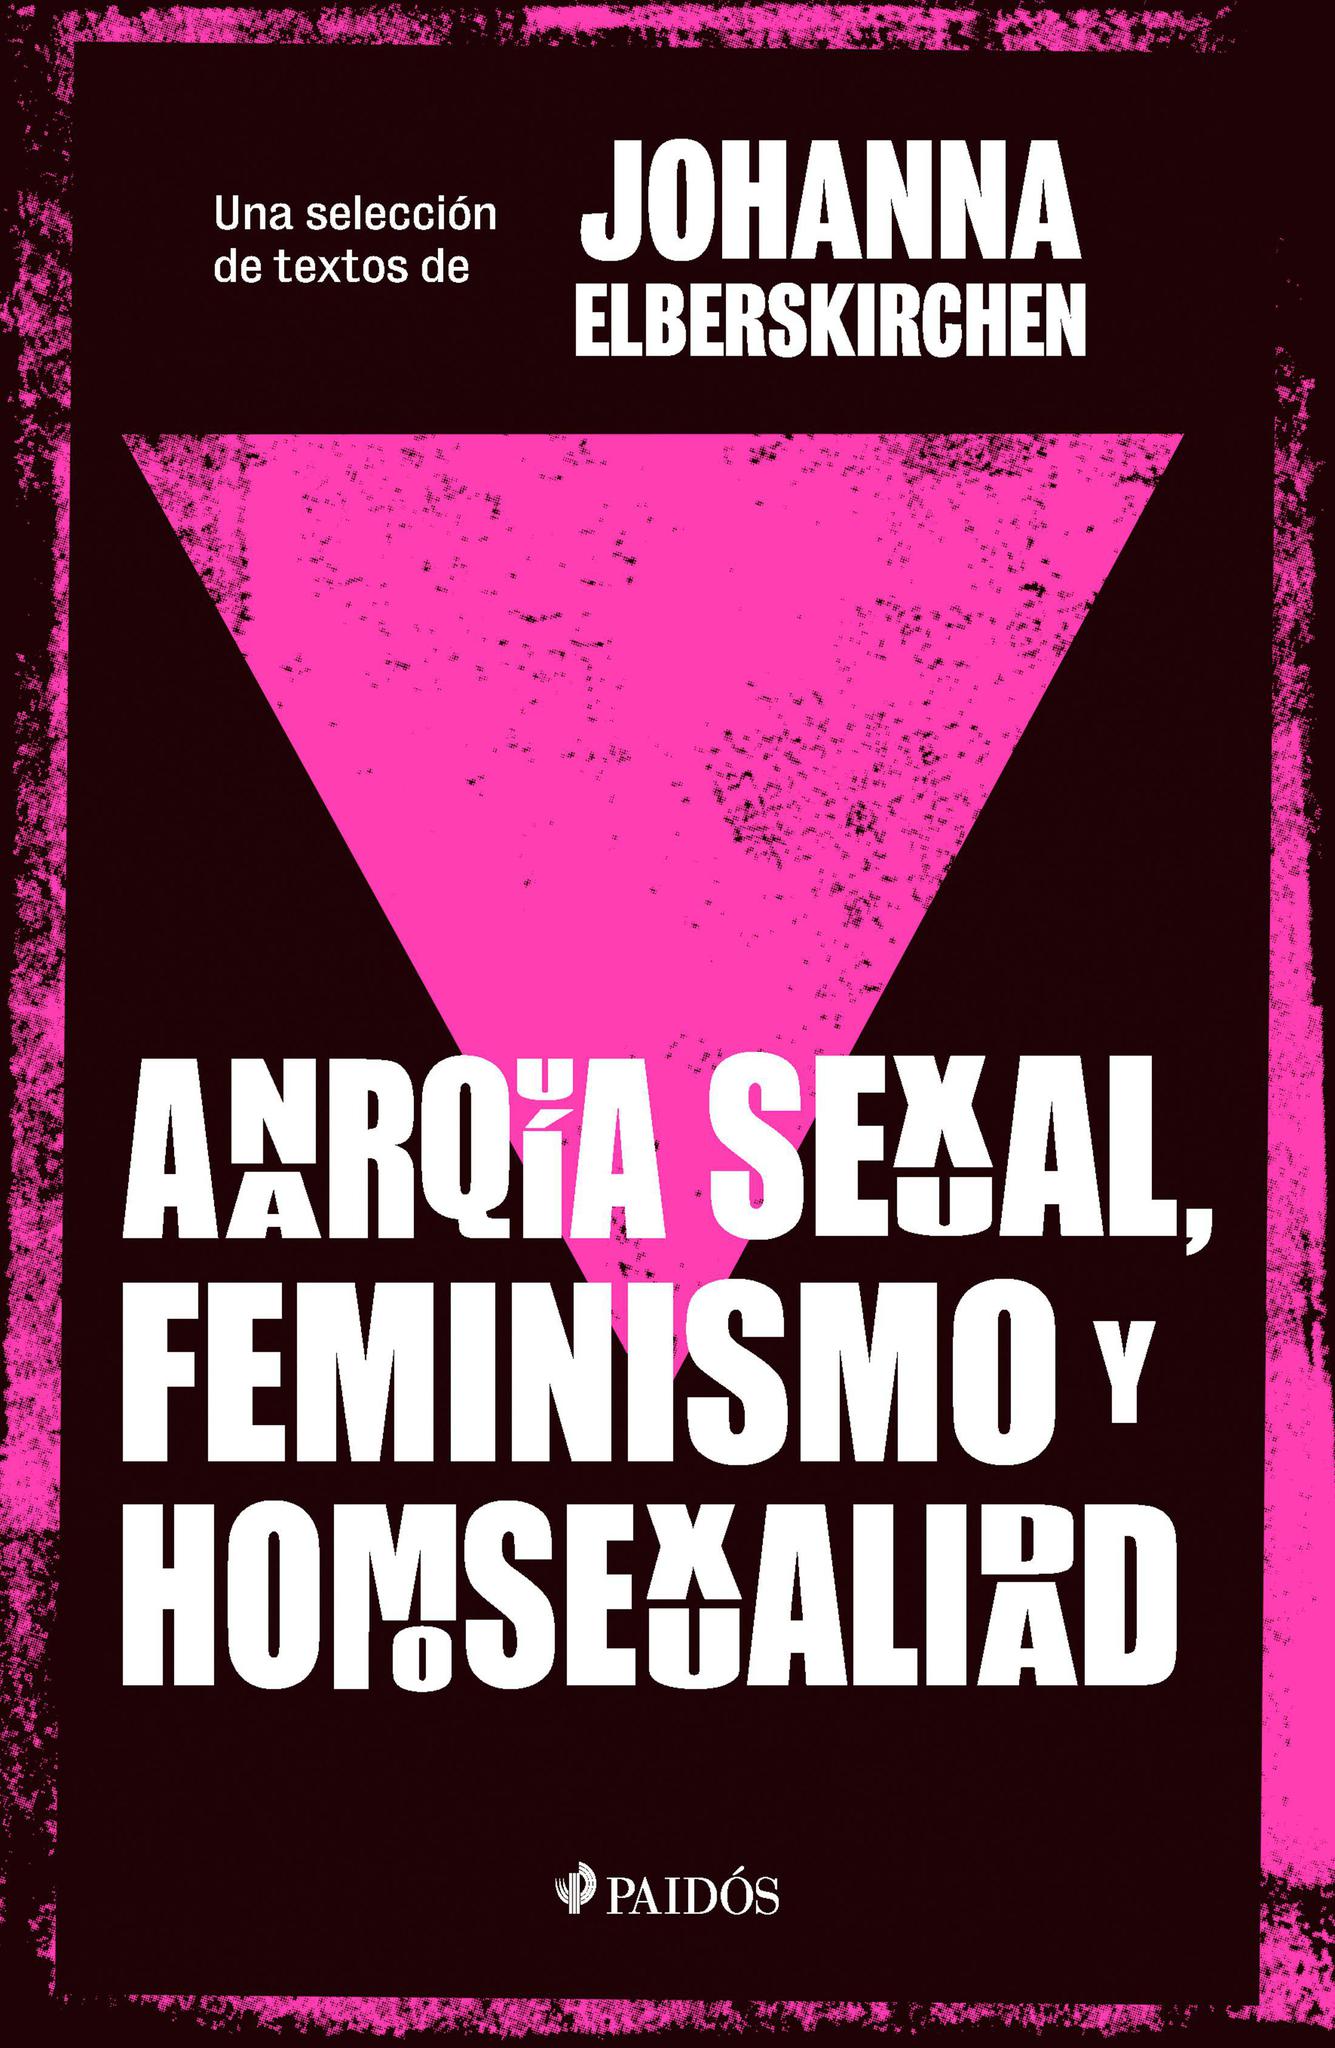 Anarquia sexual, feminismo y homosexualidad - Johanna Elberskirchen